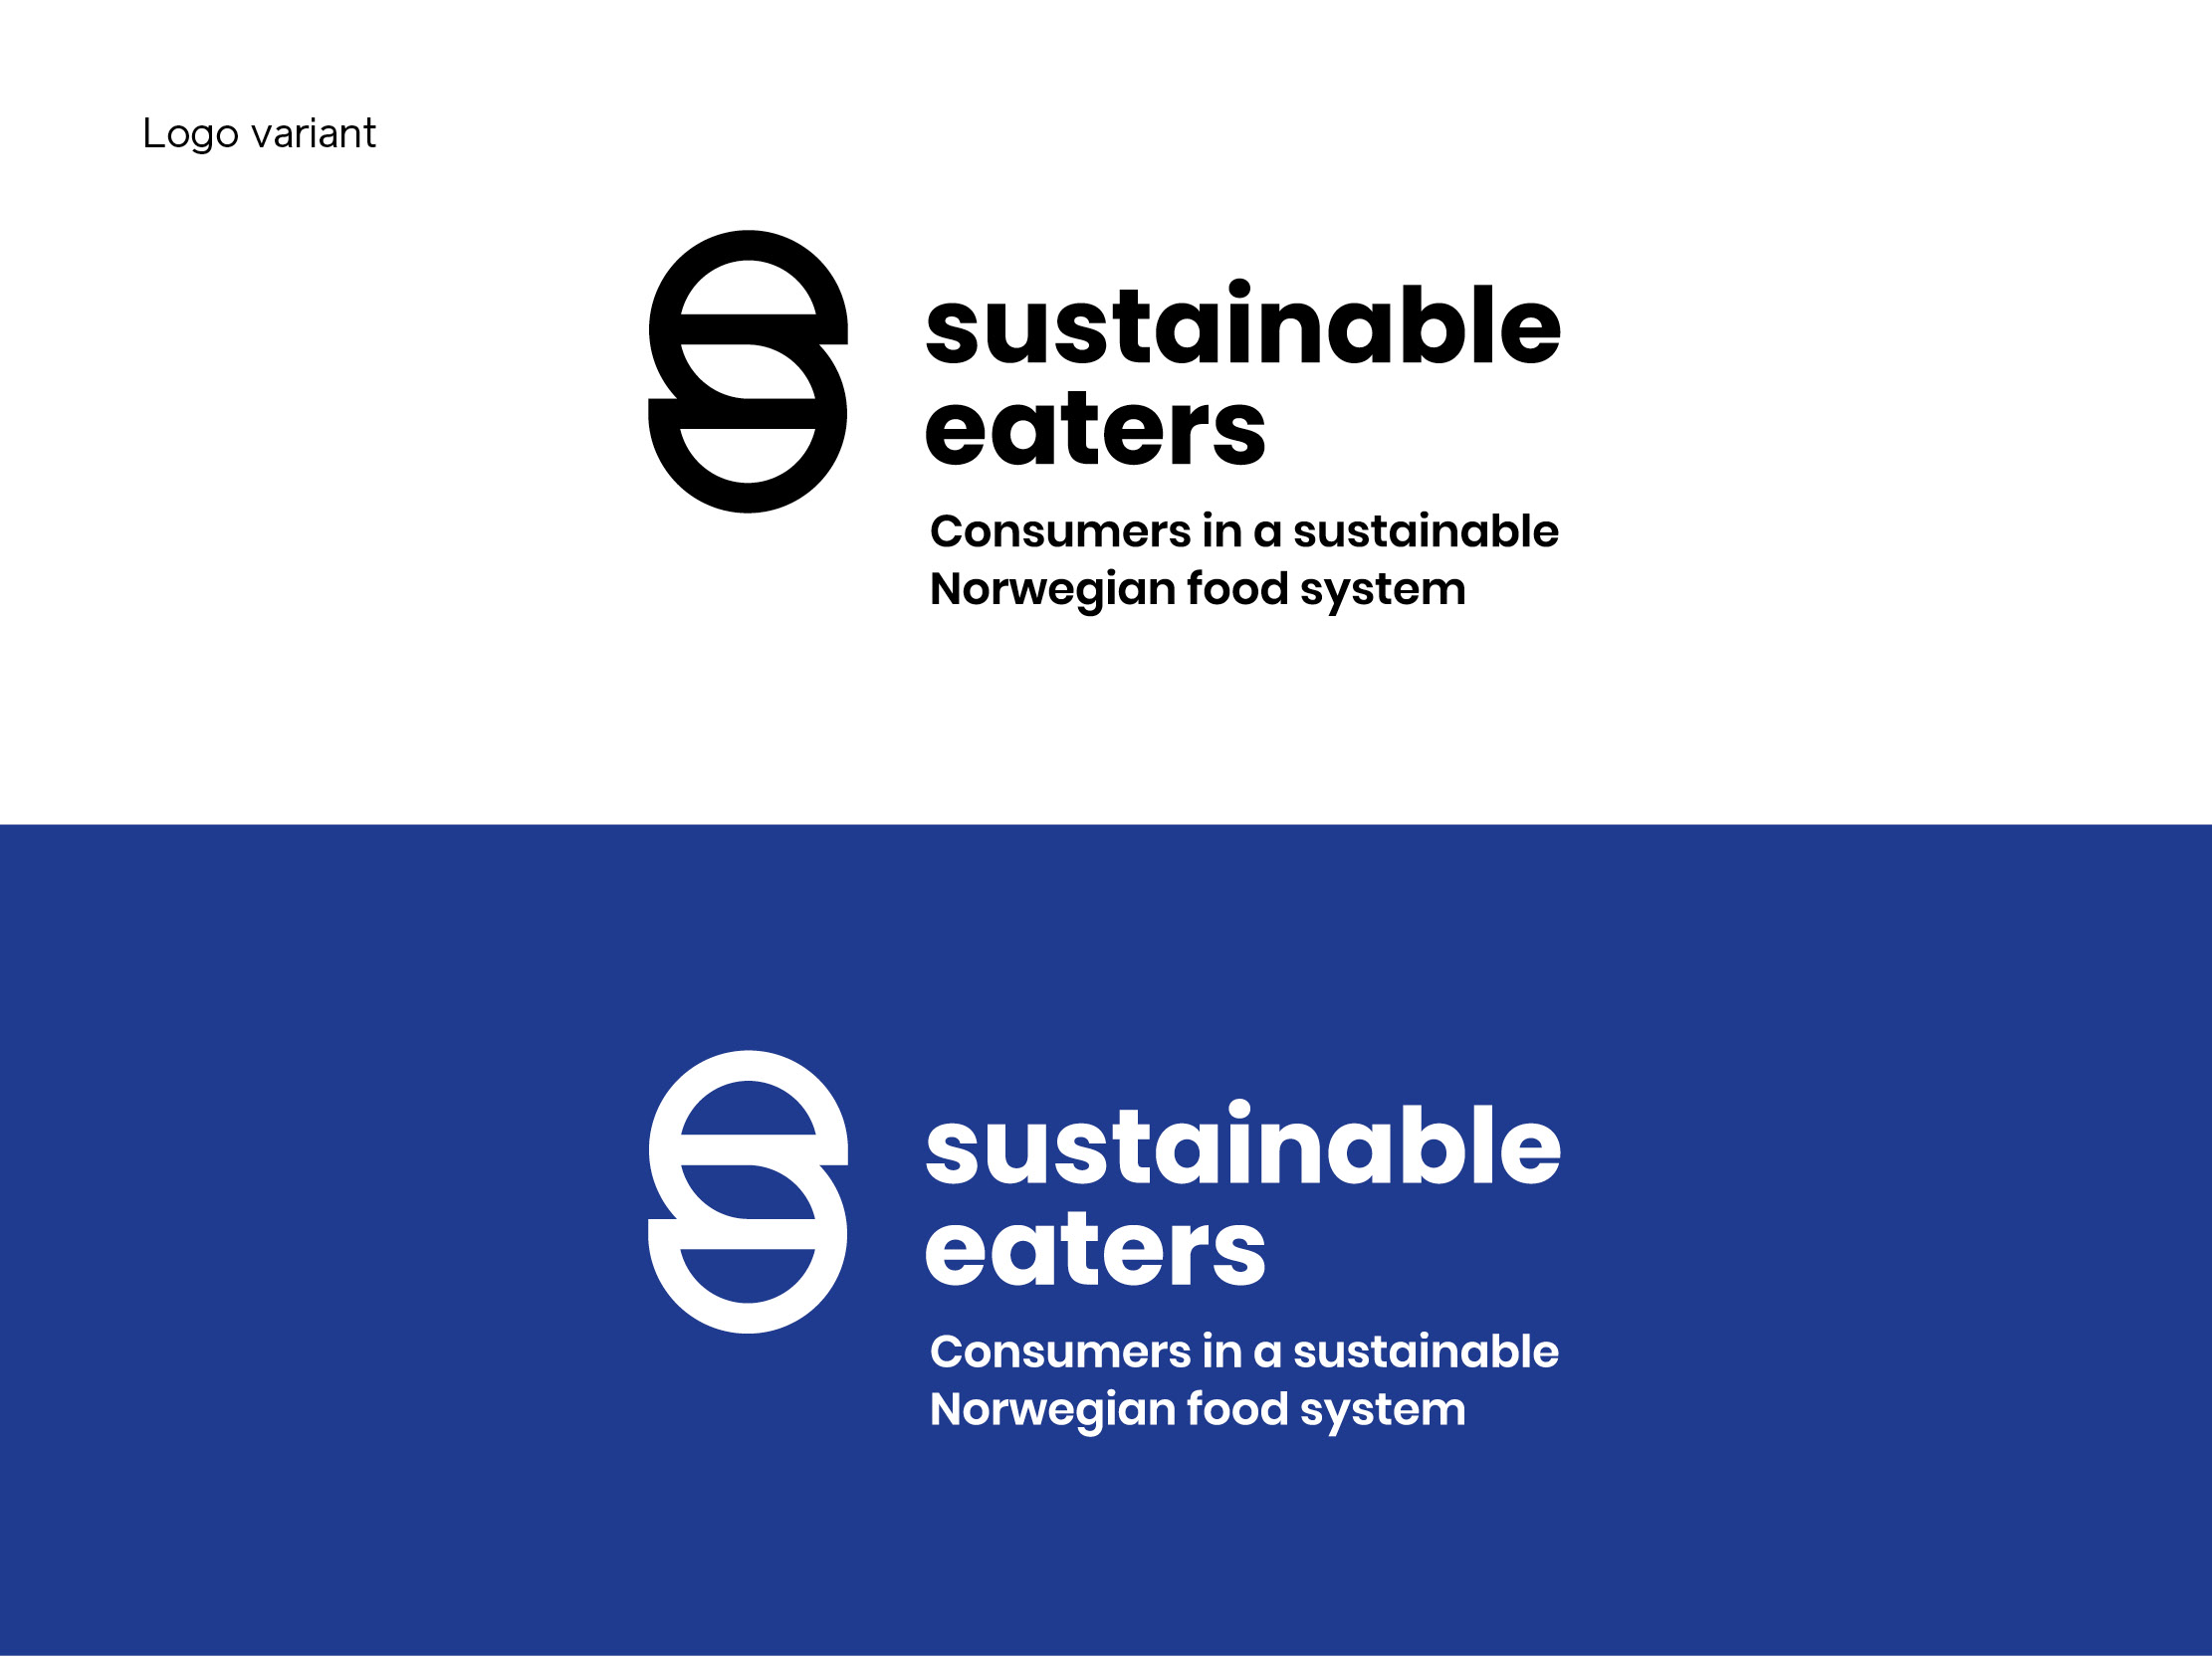 Design av logo variant i svart og hvit, for sustainable eaters, consumers in a sustainable Norwegian food system.